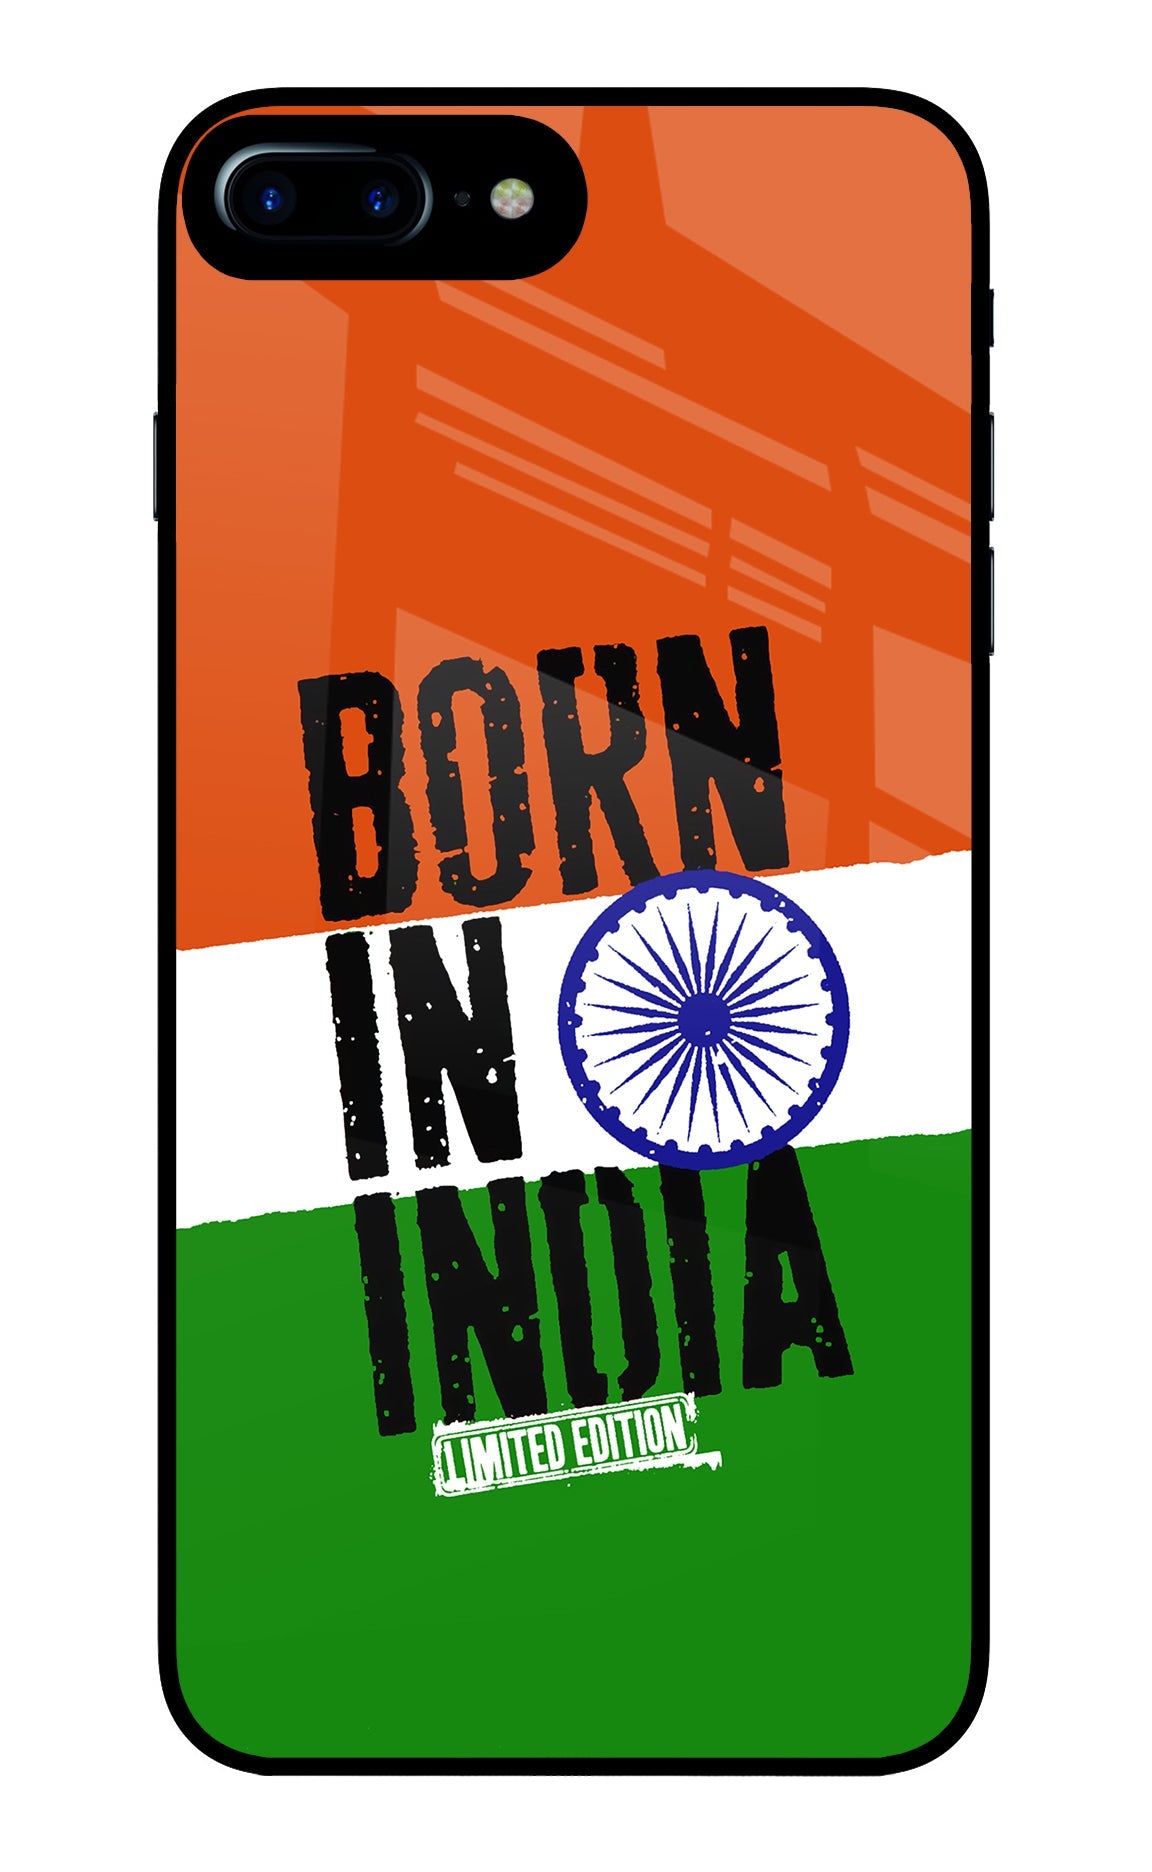 Born in India iPhone 8 Plus Glass Case